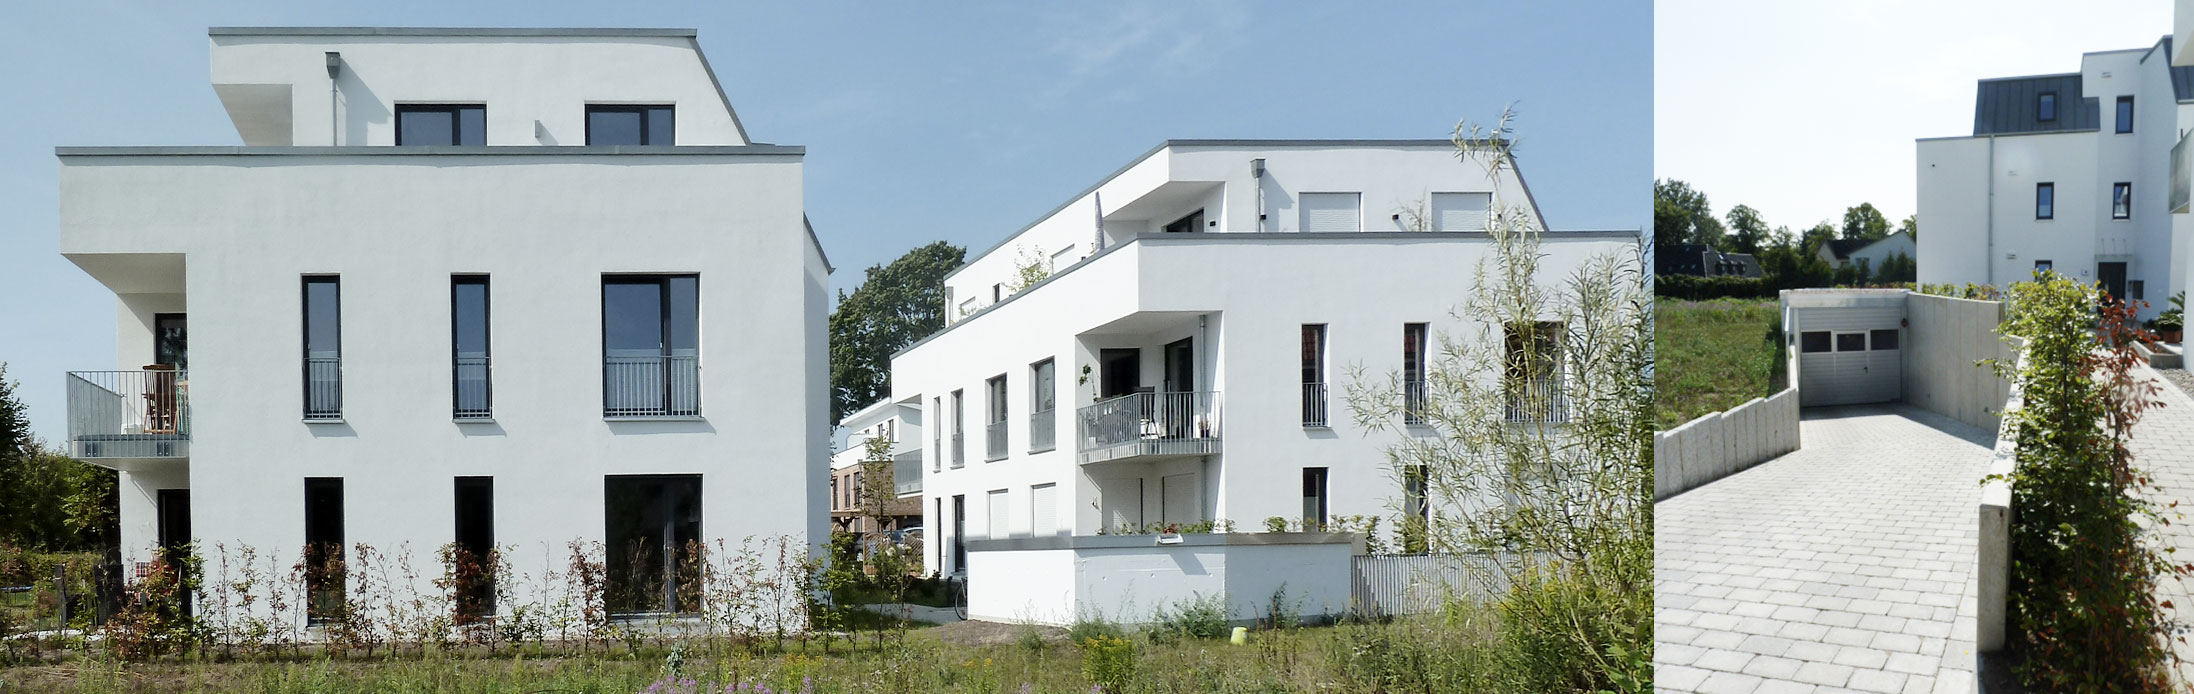 Halstenbek – Elisabeth-Miller-Weg | Mehrfamilienhaus | 10 Wohneinheiten | Aufzug | Tiefgarage | Baujahr 2018